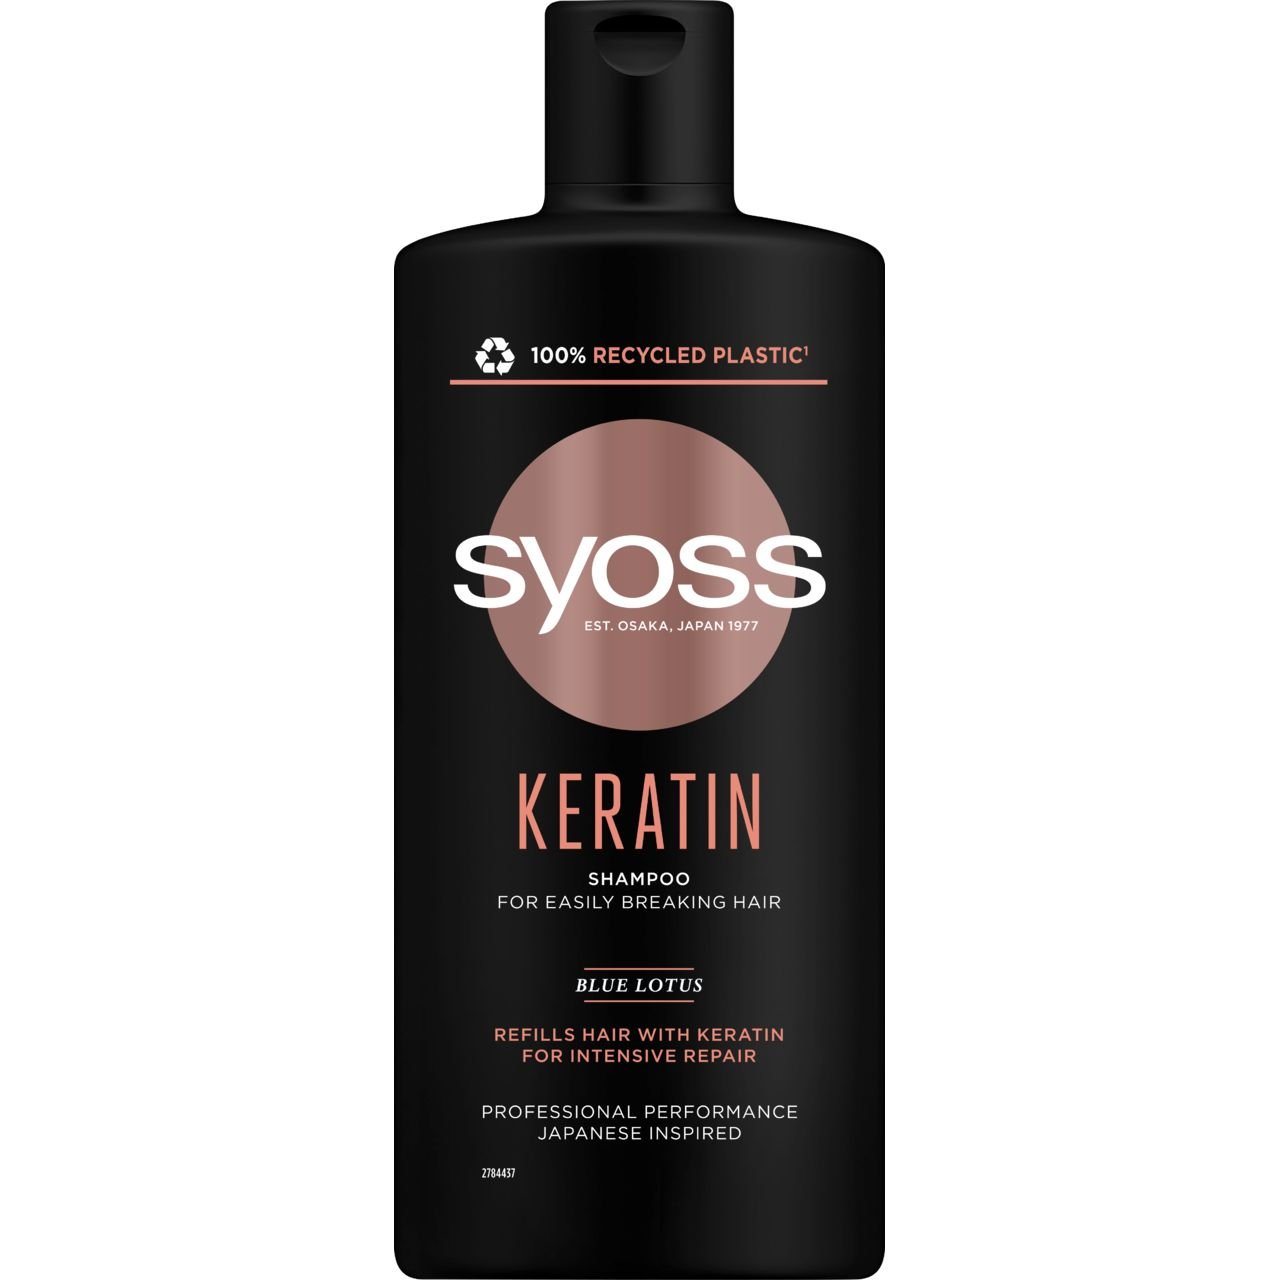 Набор Syoss Keratin для ломких волос: Шампунь Blue Lotus 440 мл + Бальзам Blue Lotus 440 мл - фото 2